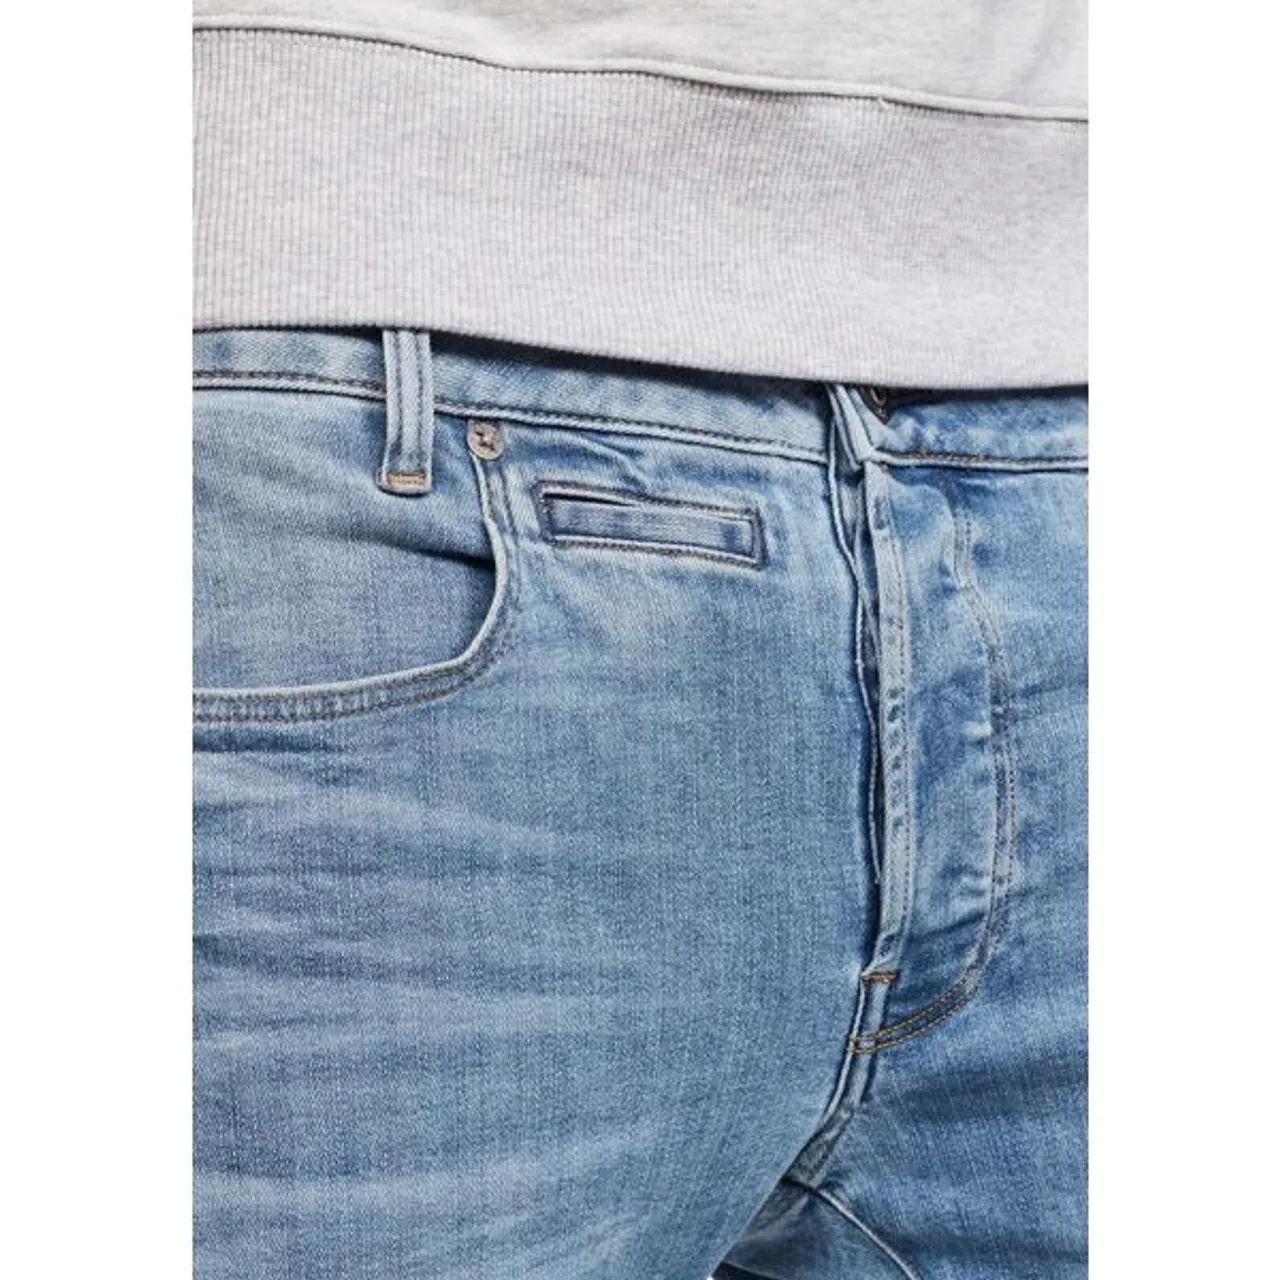 Slim-fit-Jeans G-STAR RAW "D-Staq 3D Slim Fit" Gr. 35, Länge 36, blau (light, blue) Herren Jeans Slim Fit